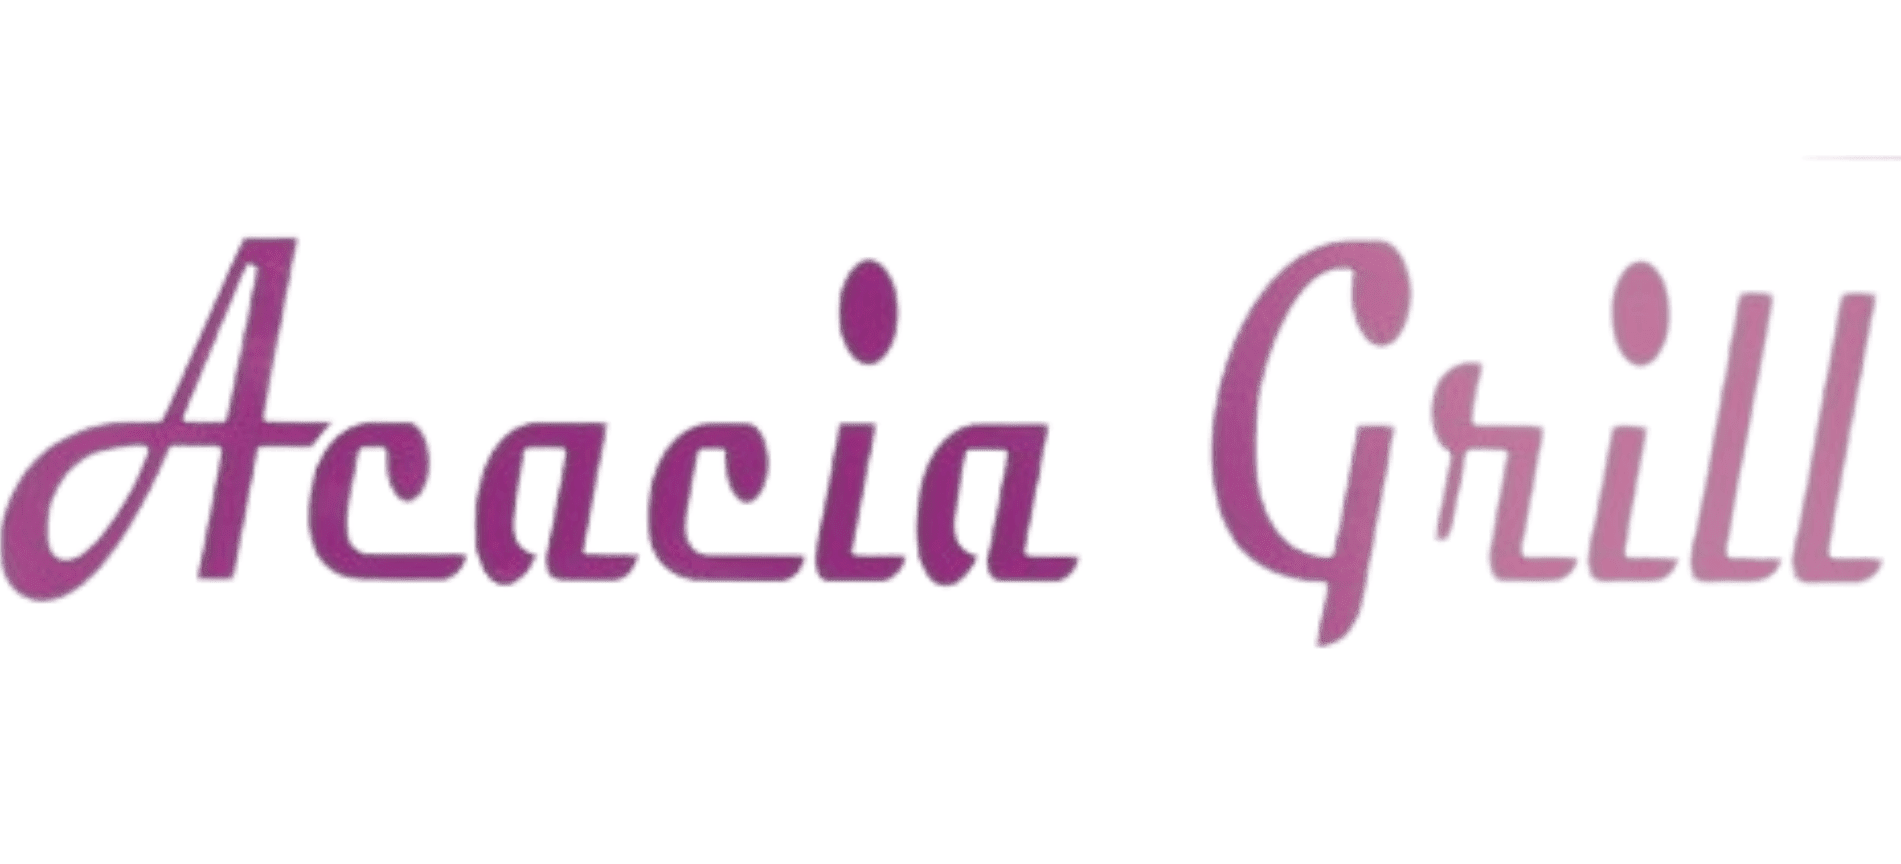 Acacia Grill